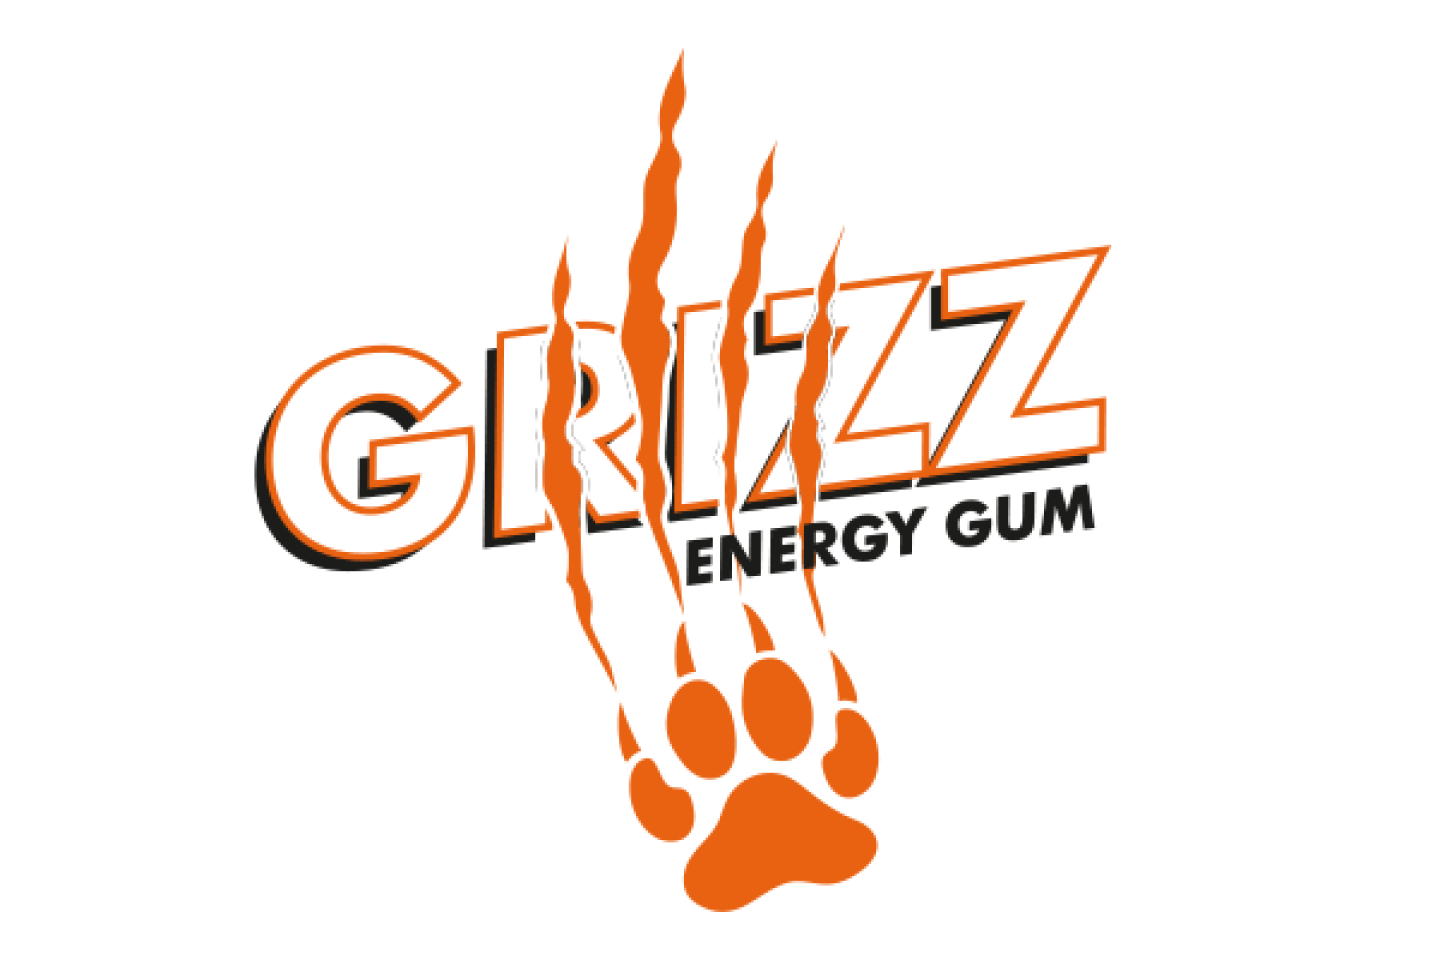 Grizz Energy Gum